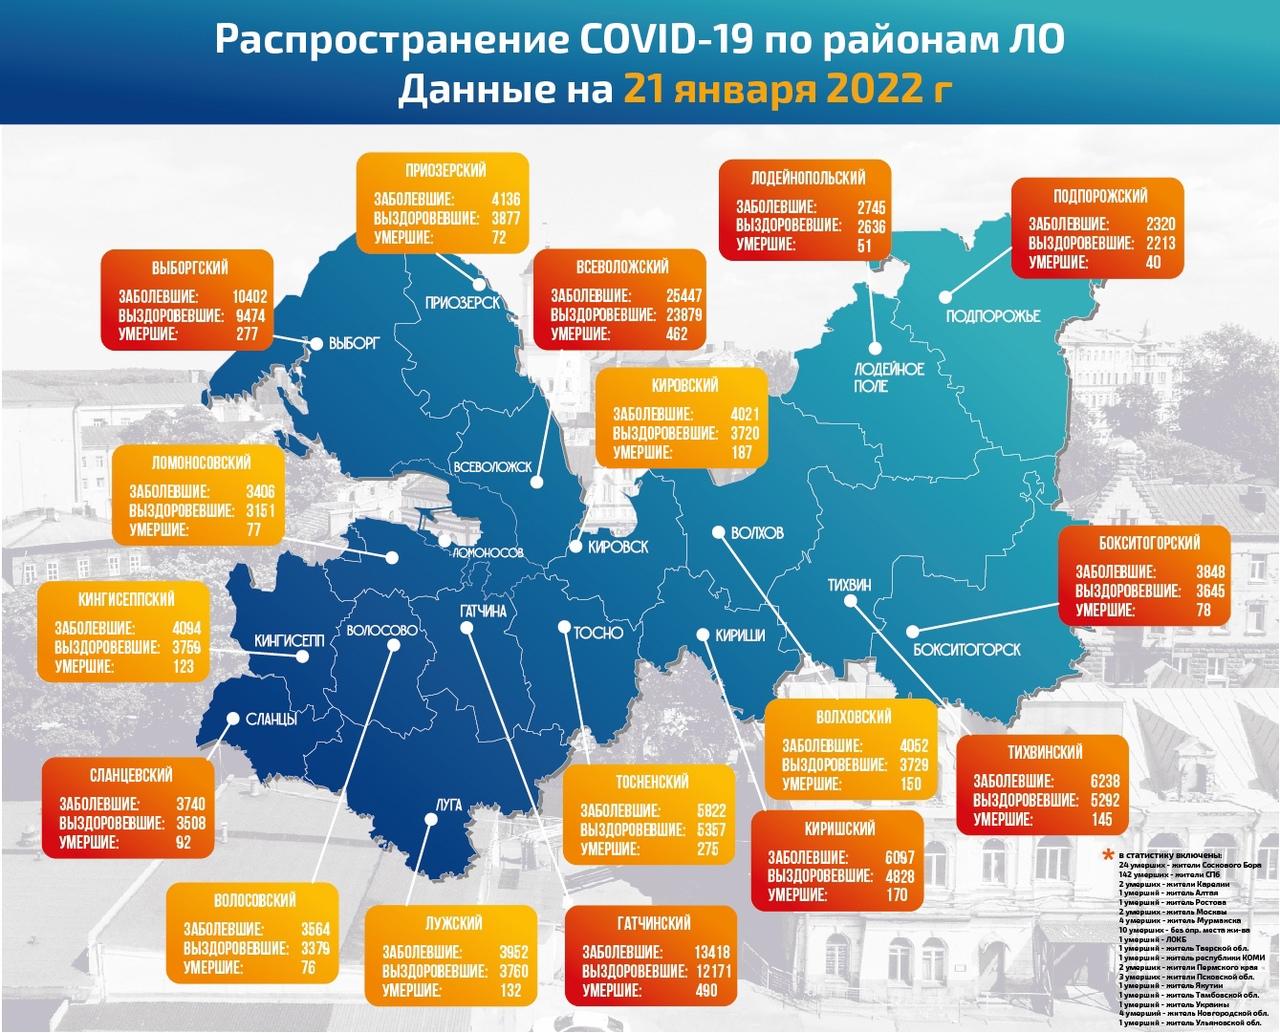 В Гатчине и районе – 44 новых заболевших COVID-19